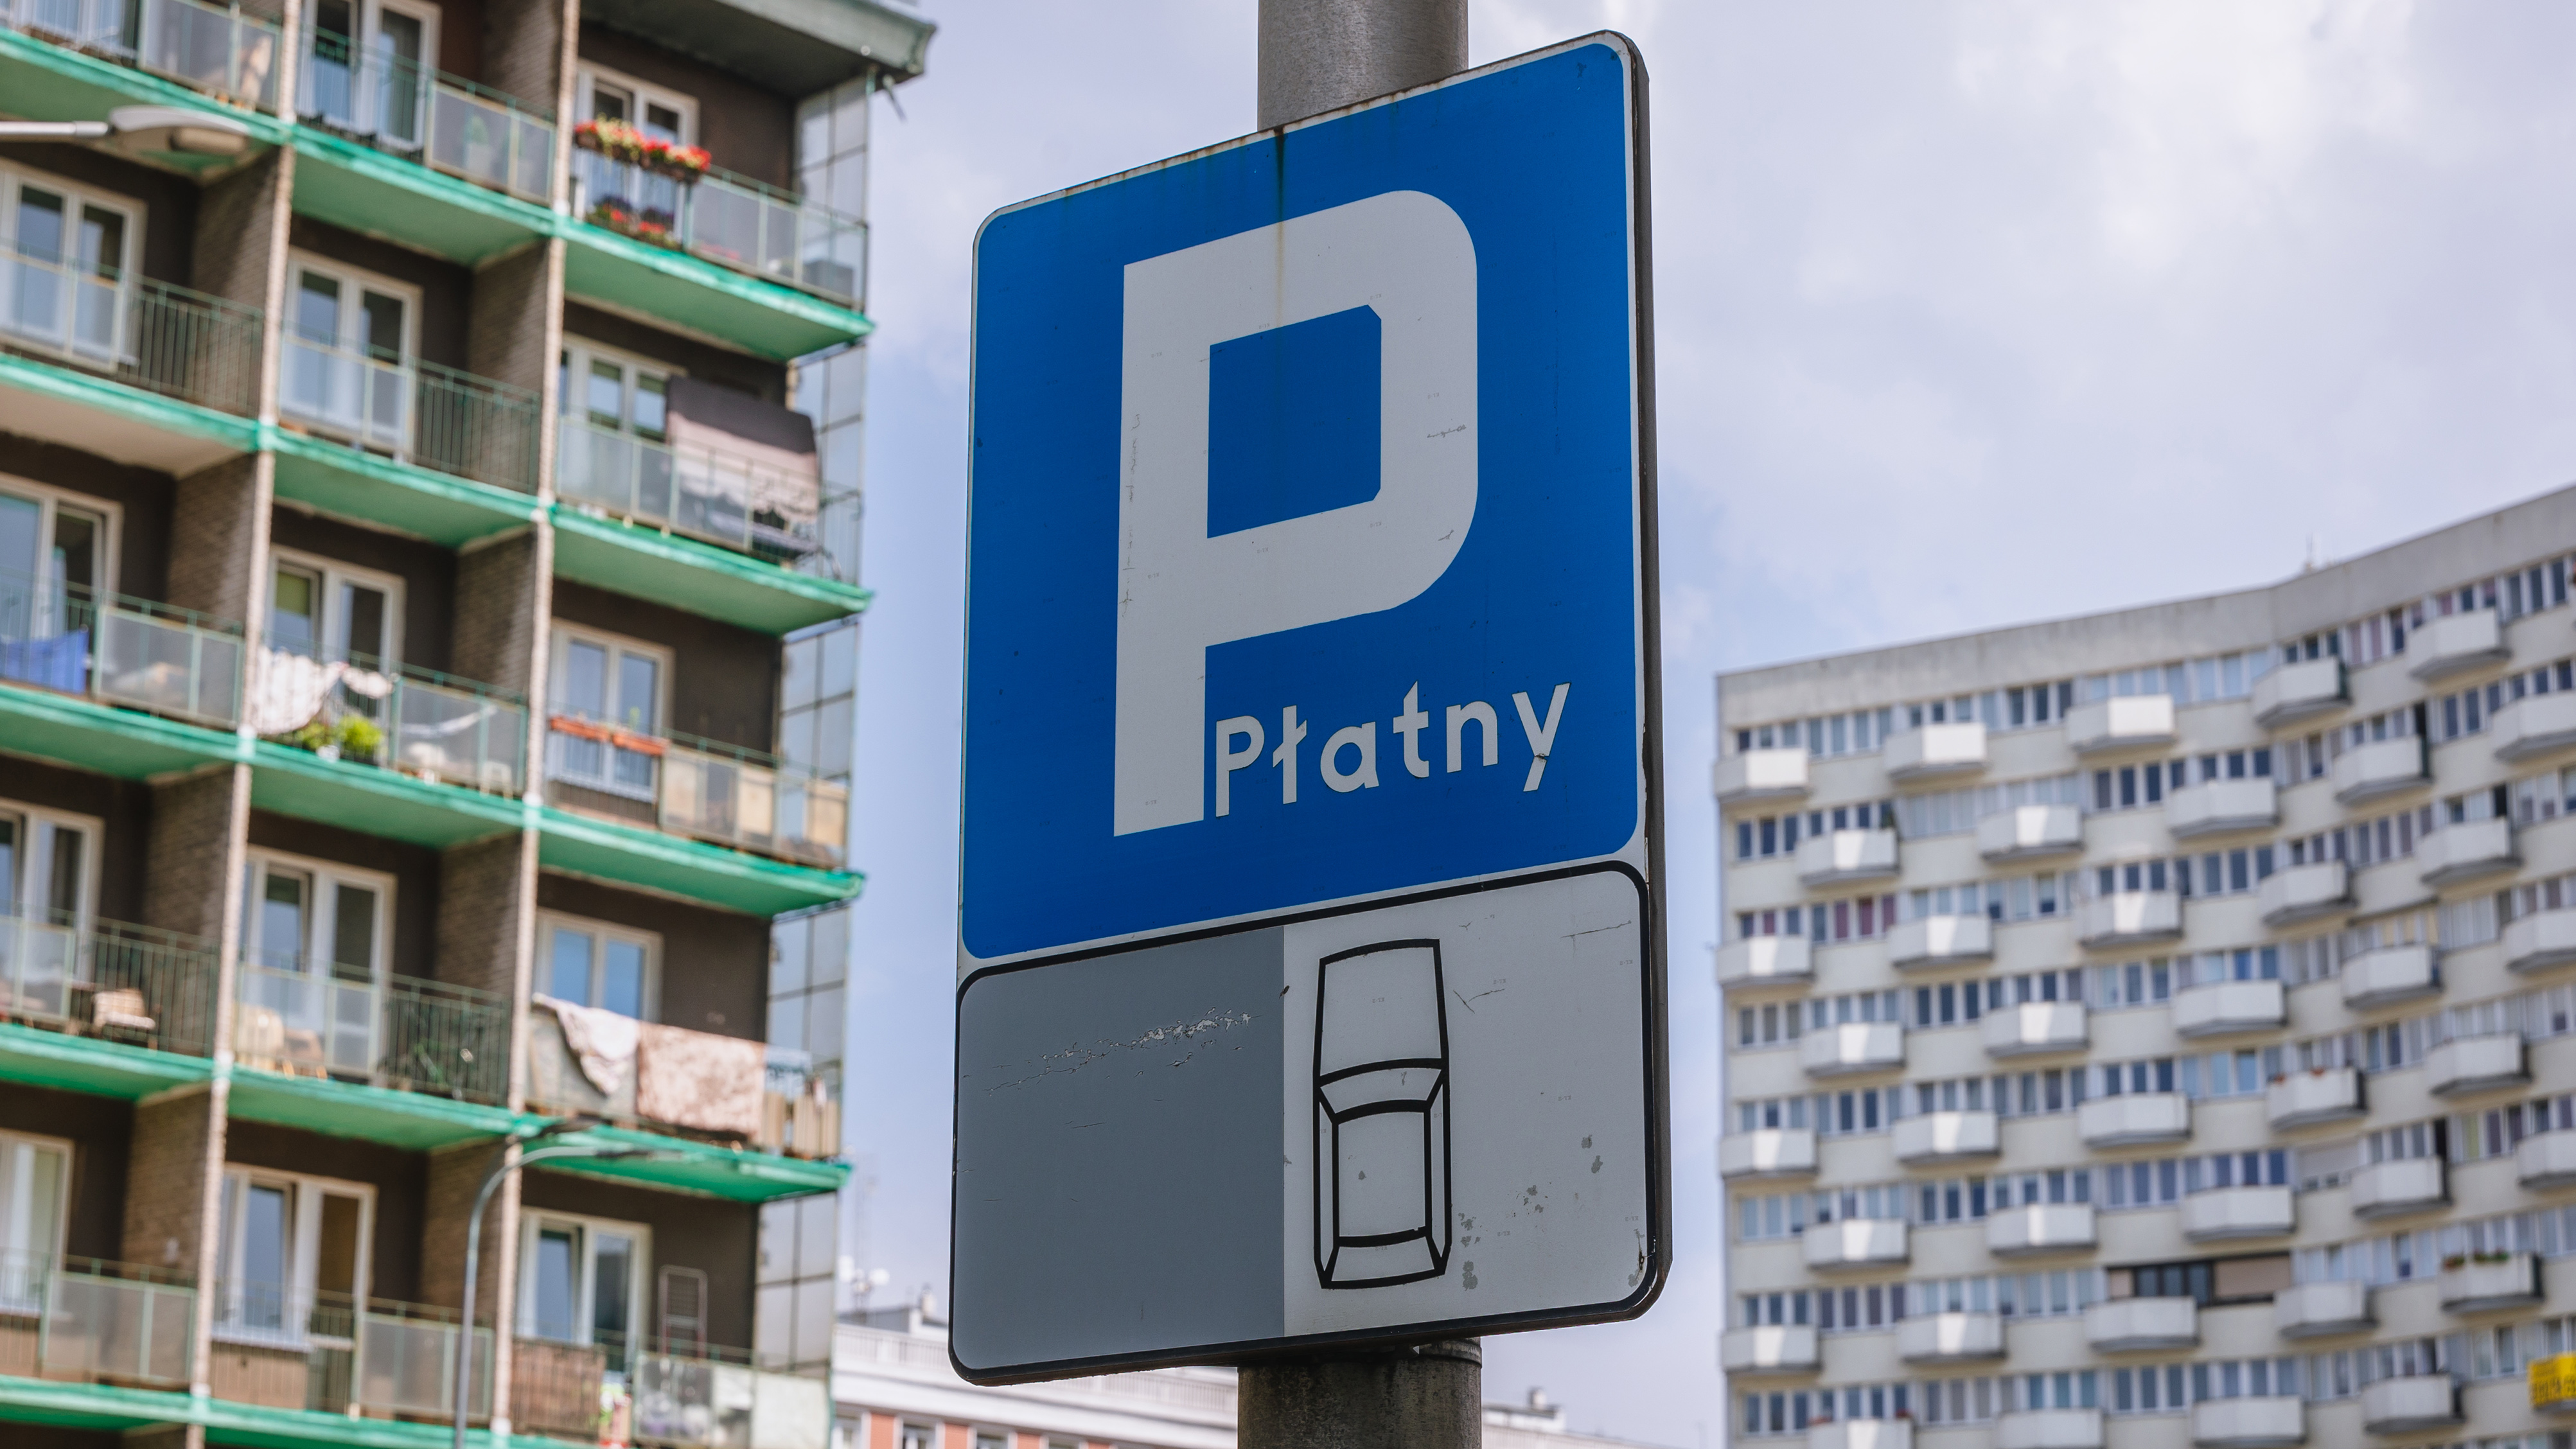 Darmowe parkowanie w długi weekend majowy. Warszawa da odpocząć kierowcom